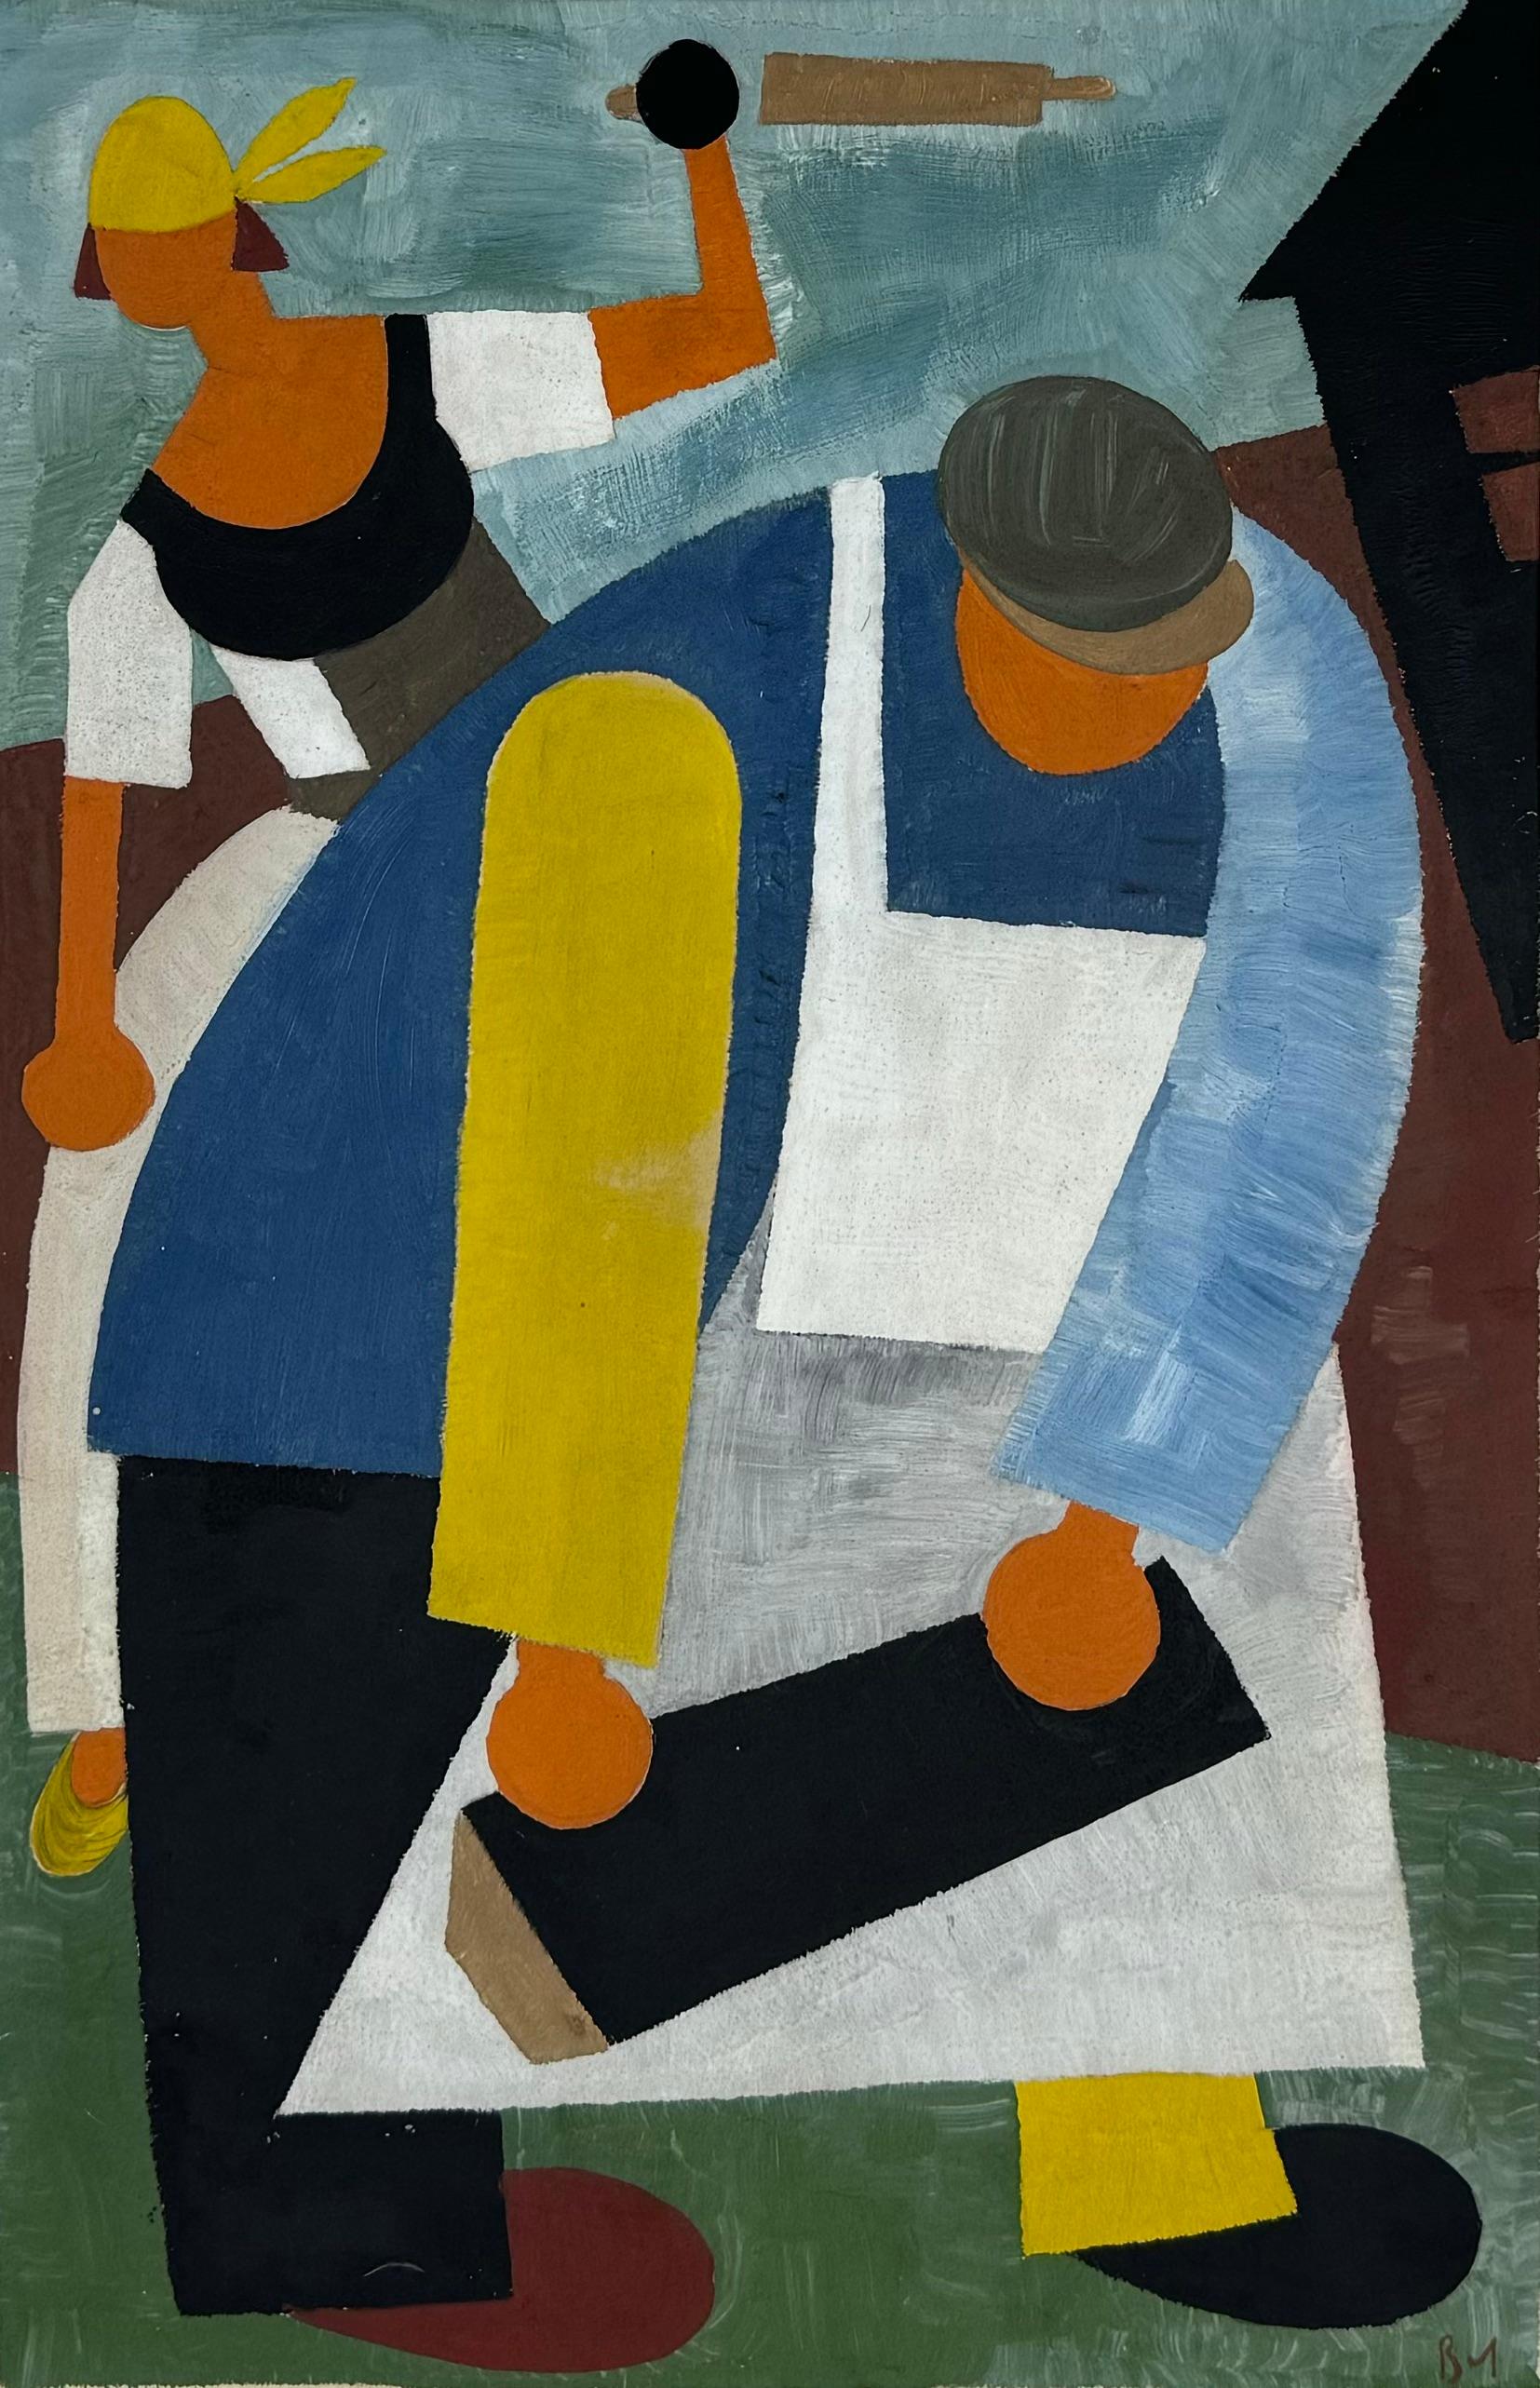 « Travaillants », constructiviste russe, réalisme social moderne des années 1920, figuratif cubiste